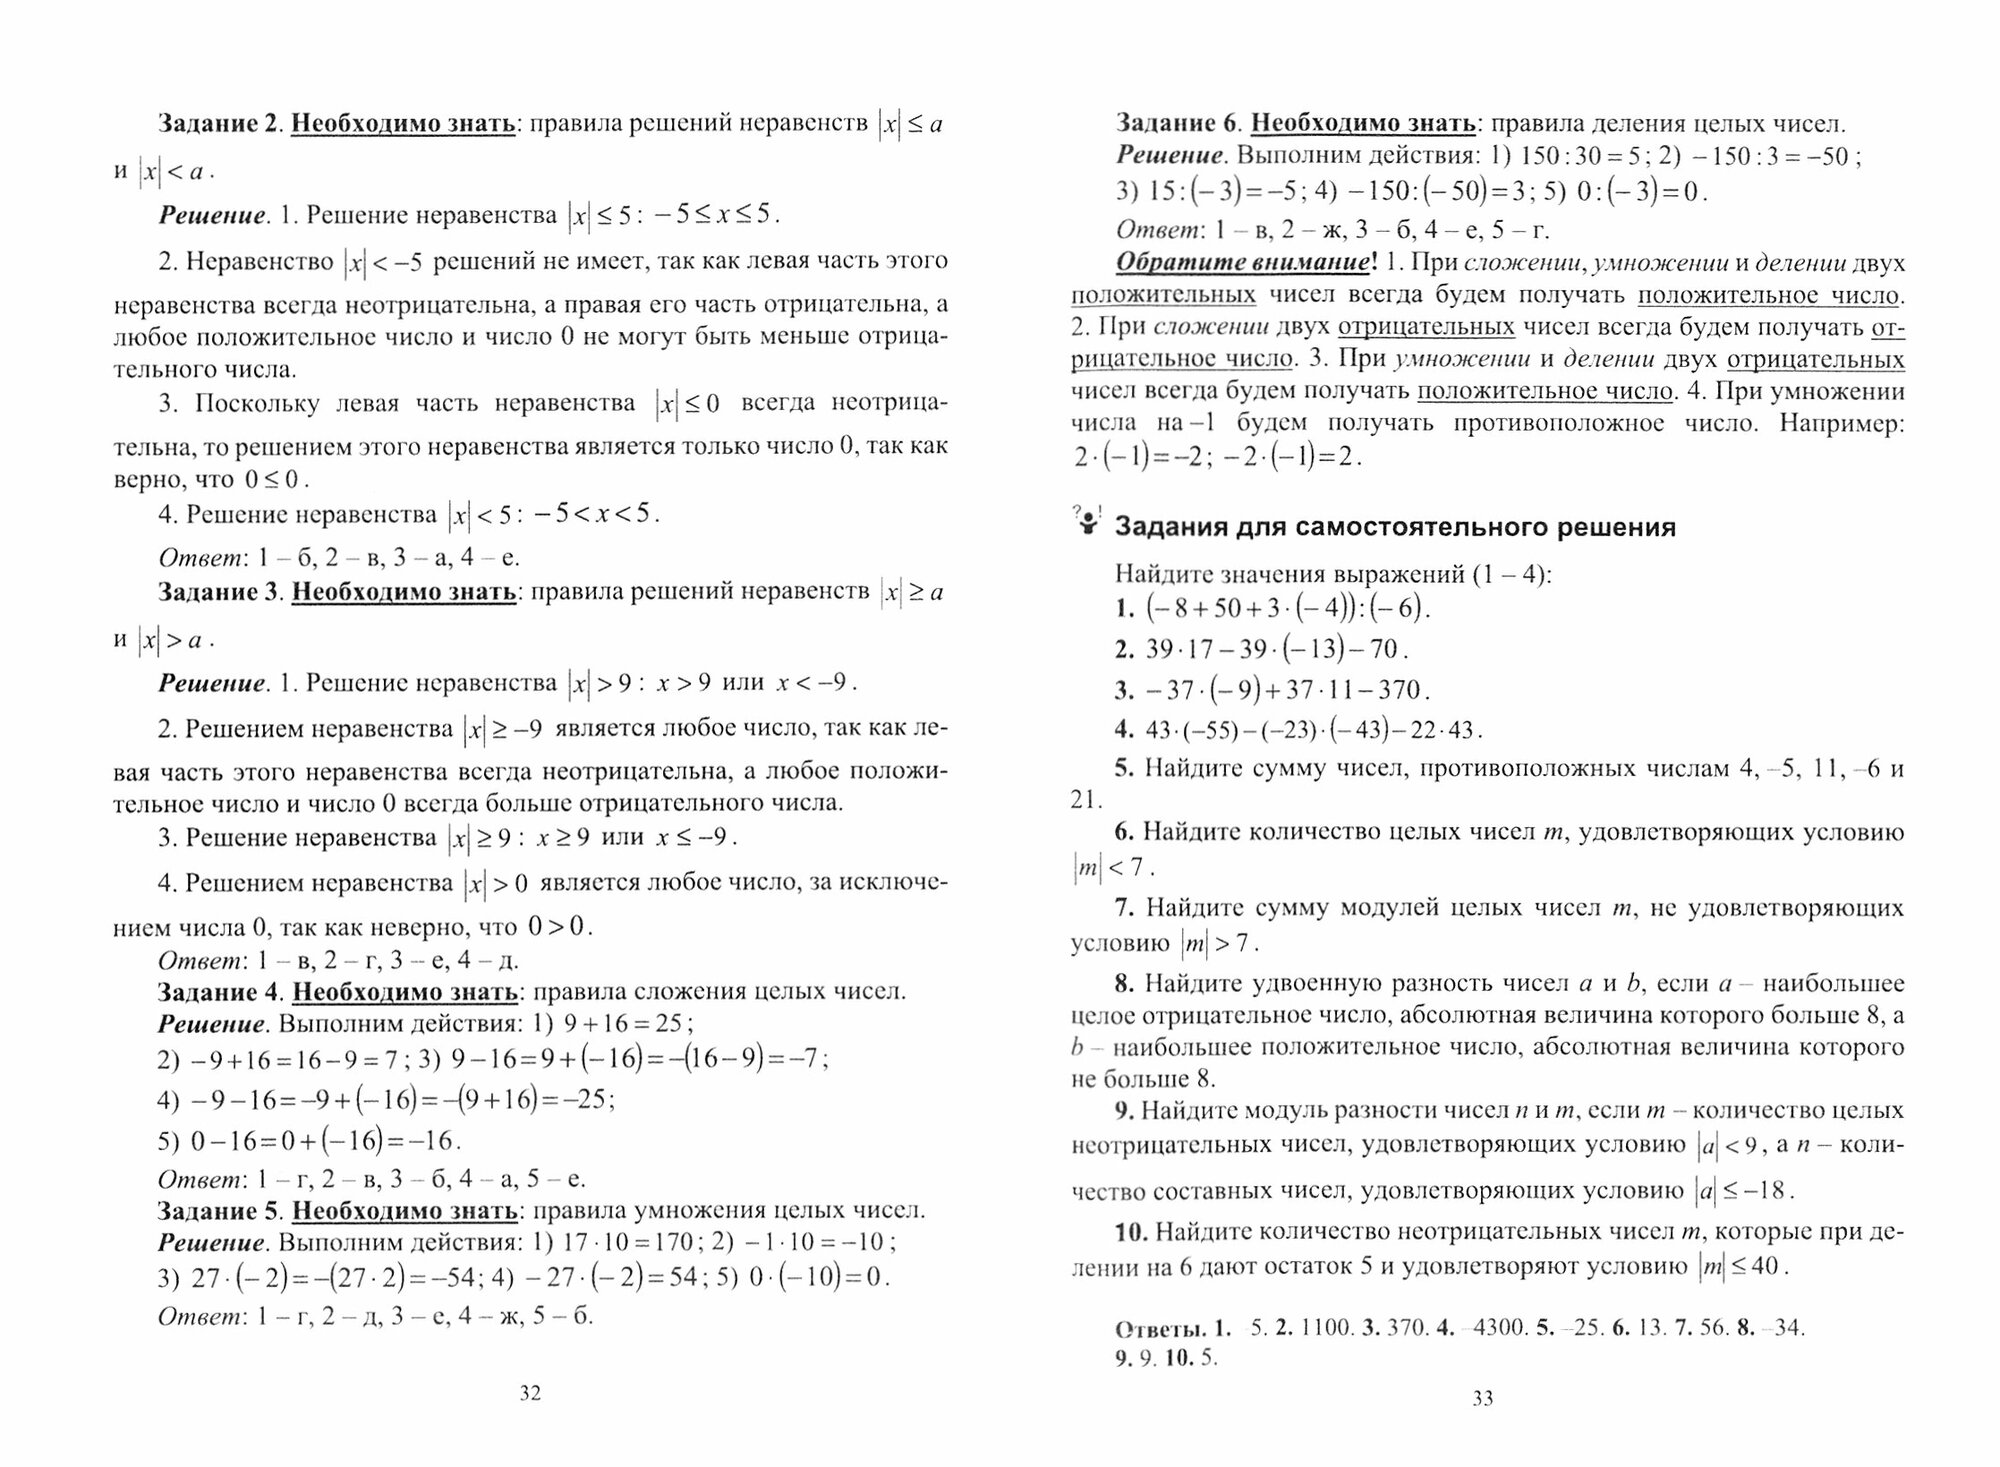 Методика обучения математике. Часть 1. Учебное пособие - фото №8